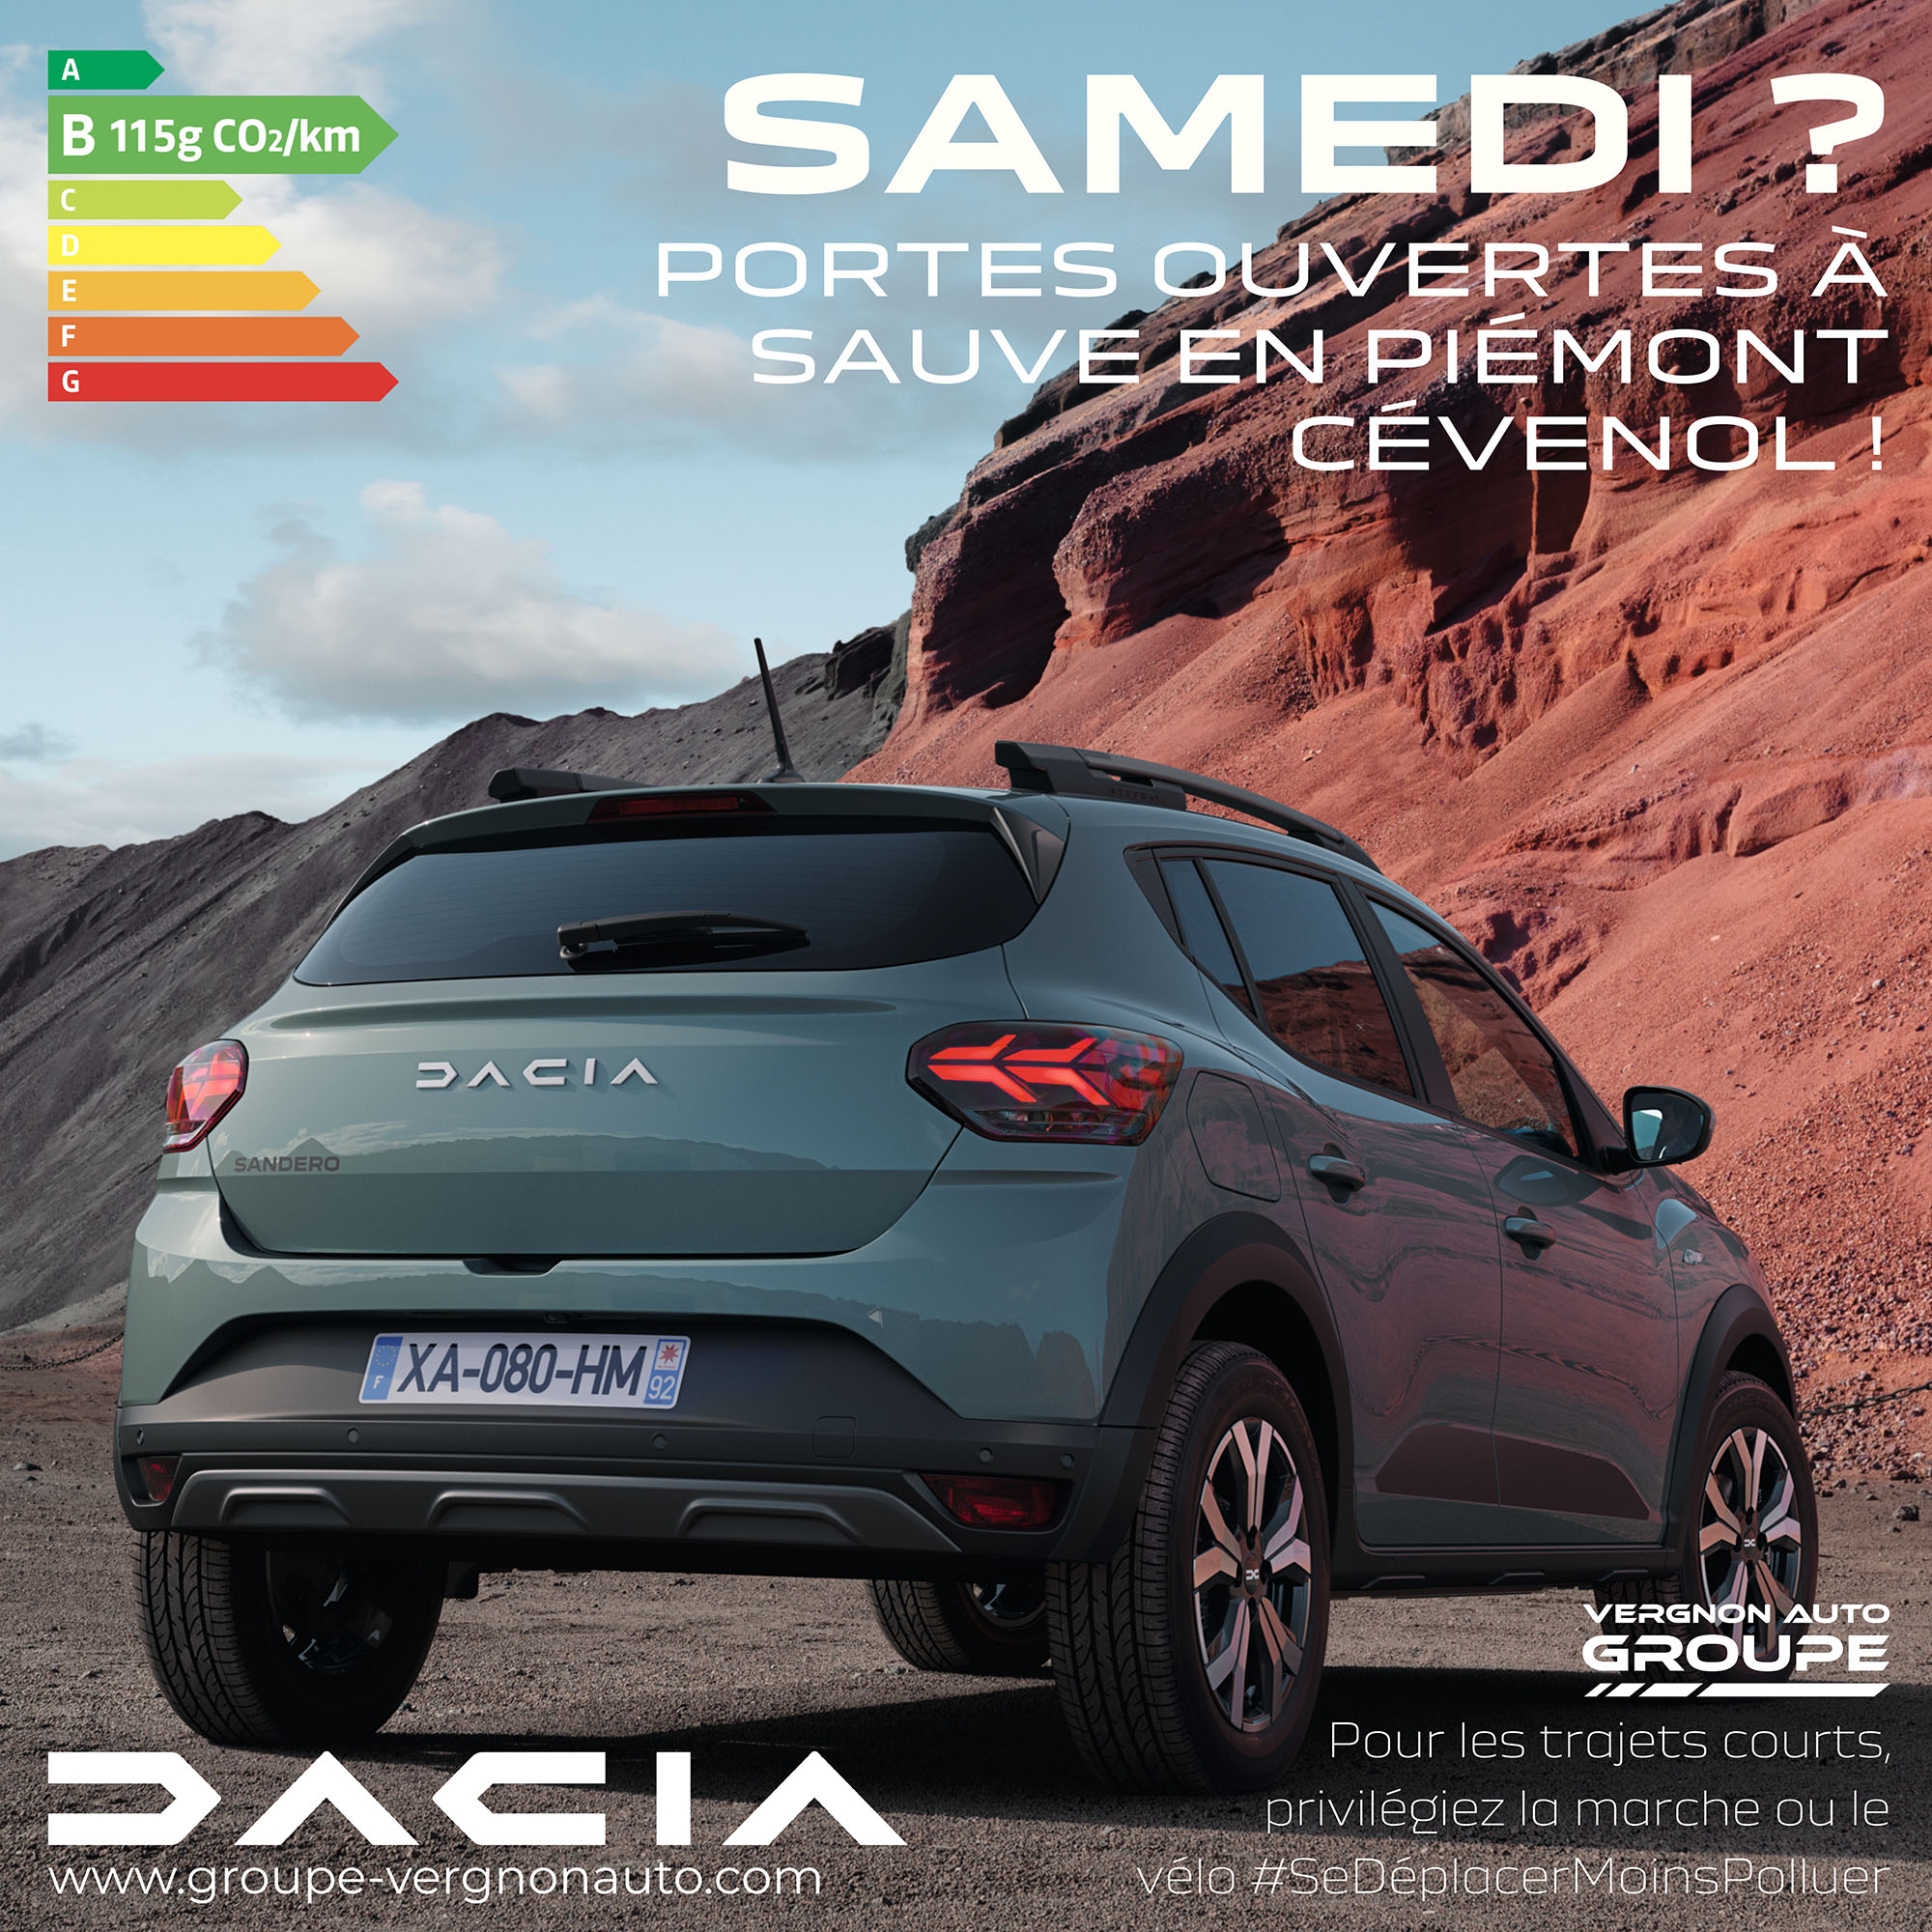 Samedi 14 janvier 2023, portes ouvertes Dacia à Sauve, venez profiter de nos offres en neuf comme en occasion !